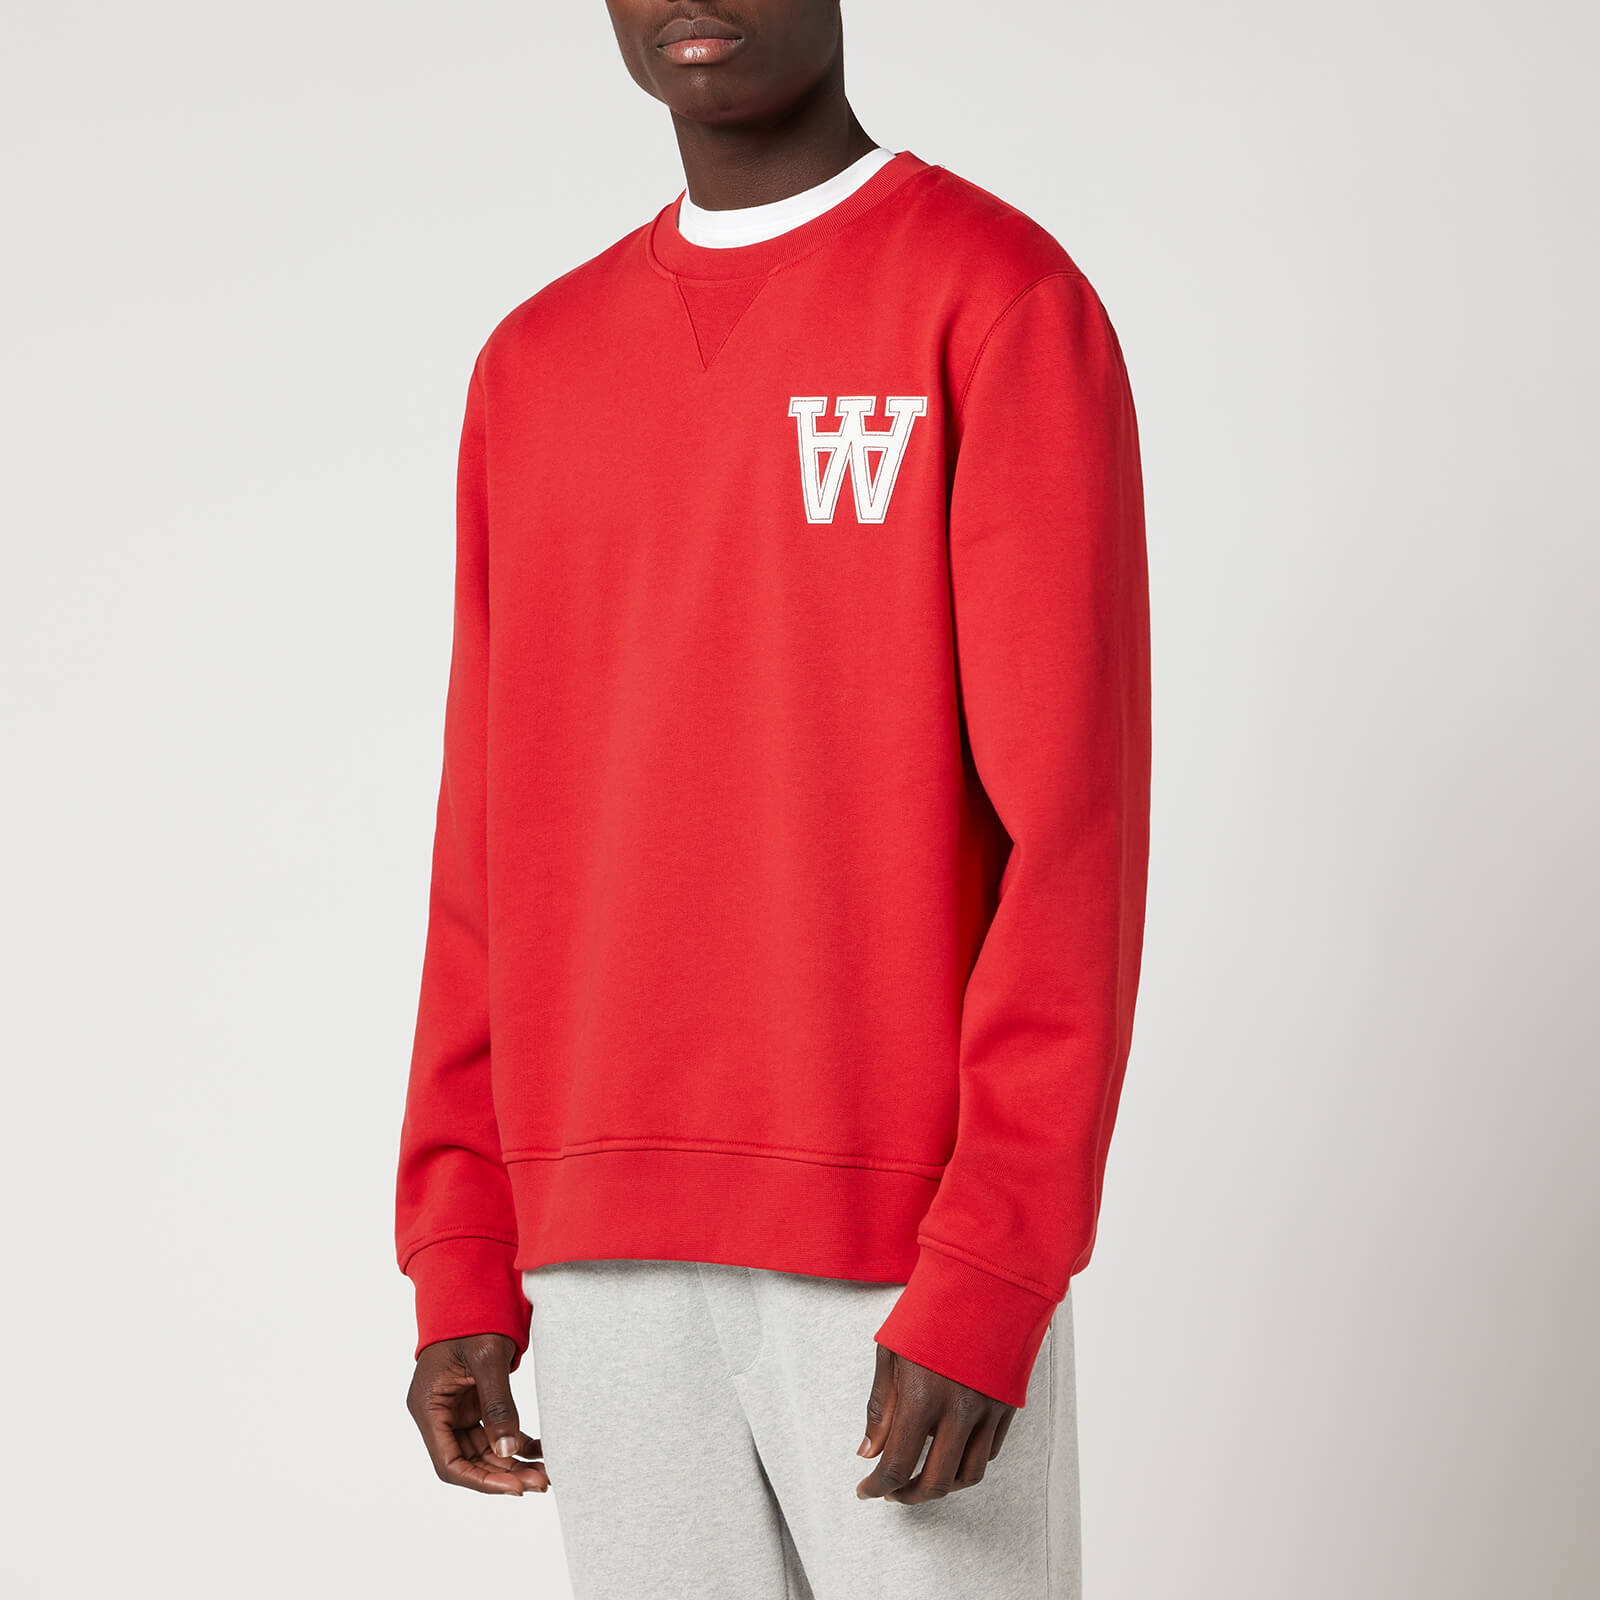 Wood Wood Men's Tye Sweatshirt - Dusty Red - M